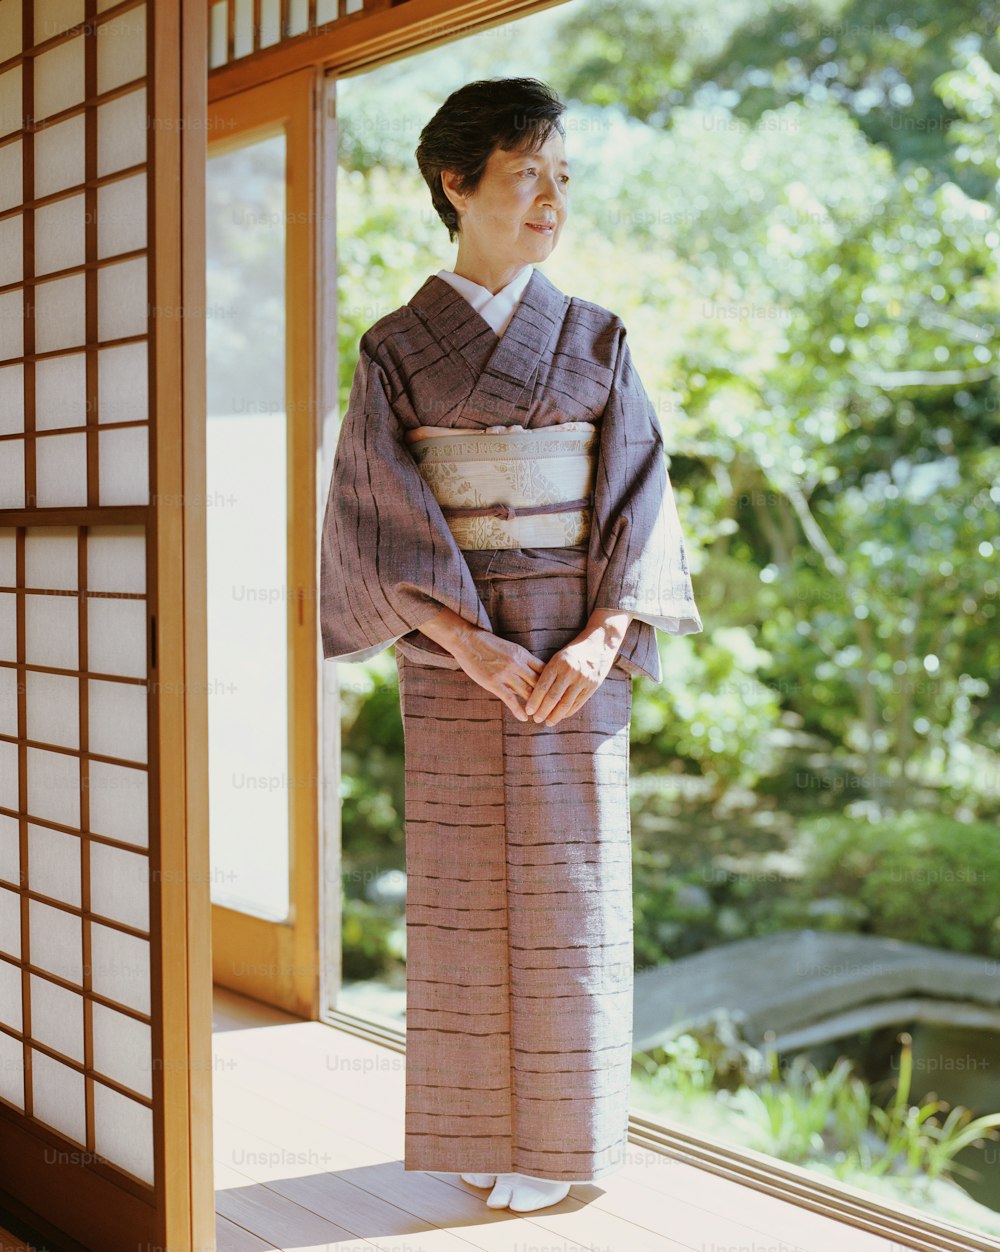 Senior woman in kimono standing in open doorway, looking away